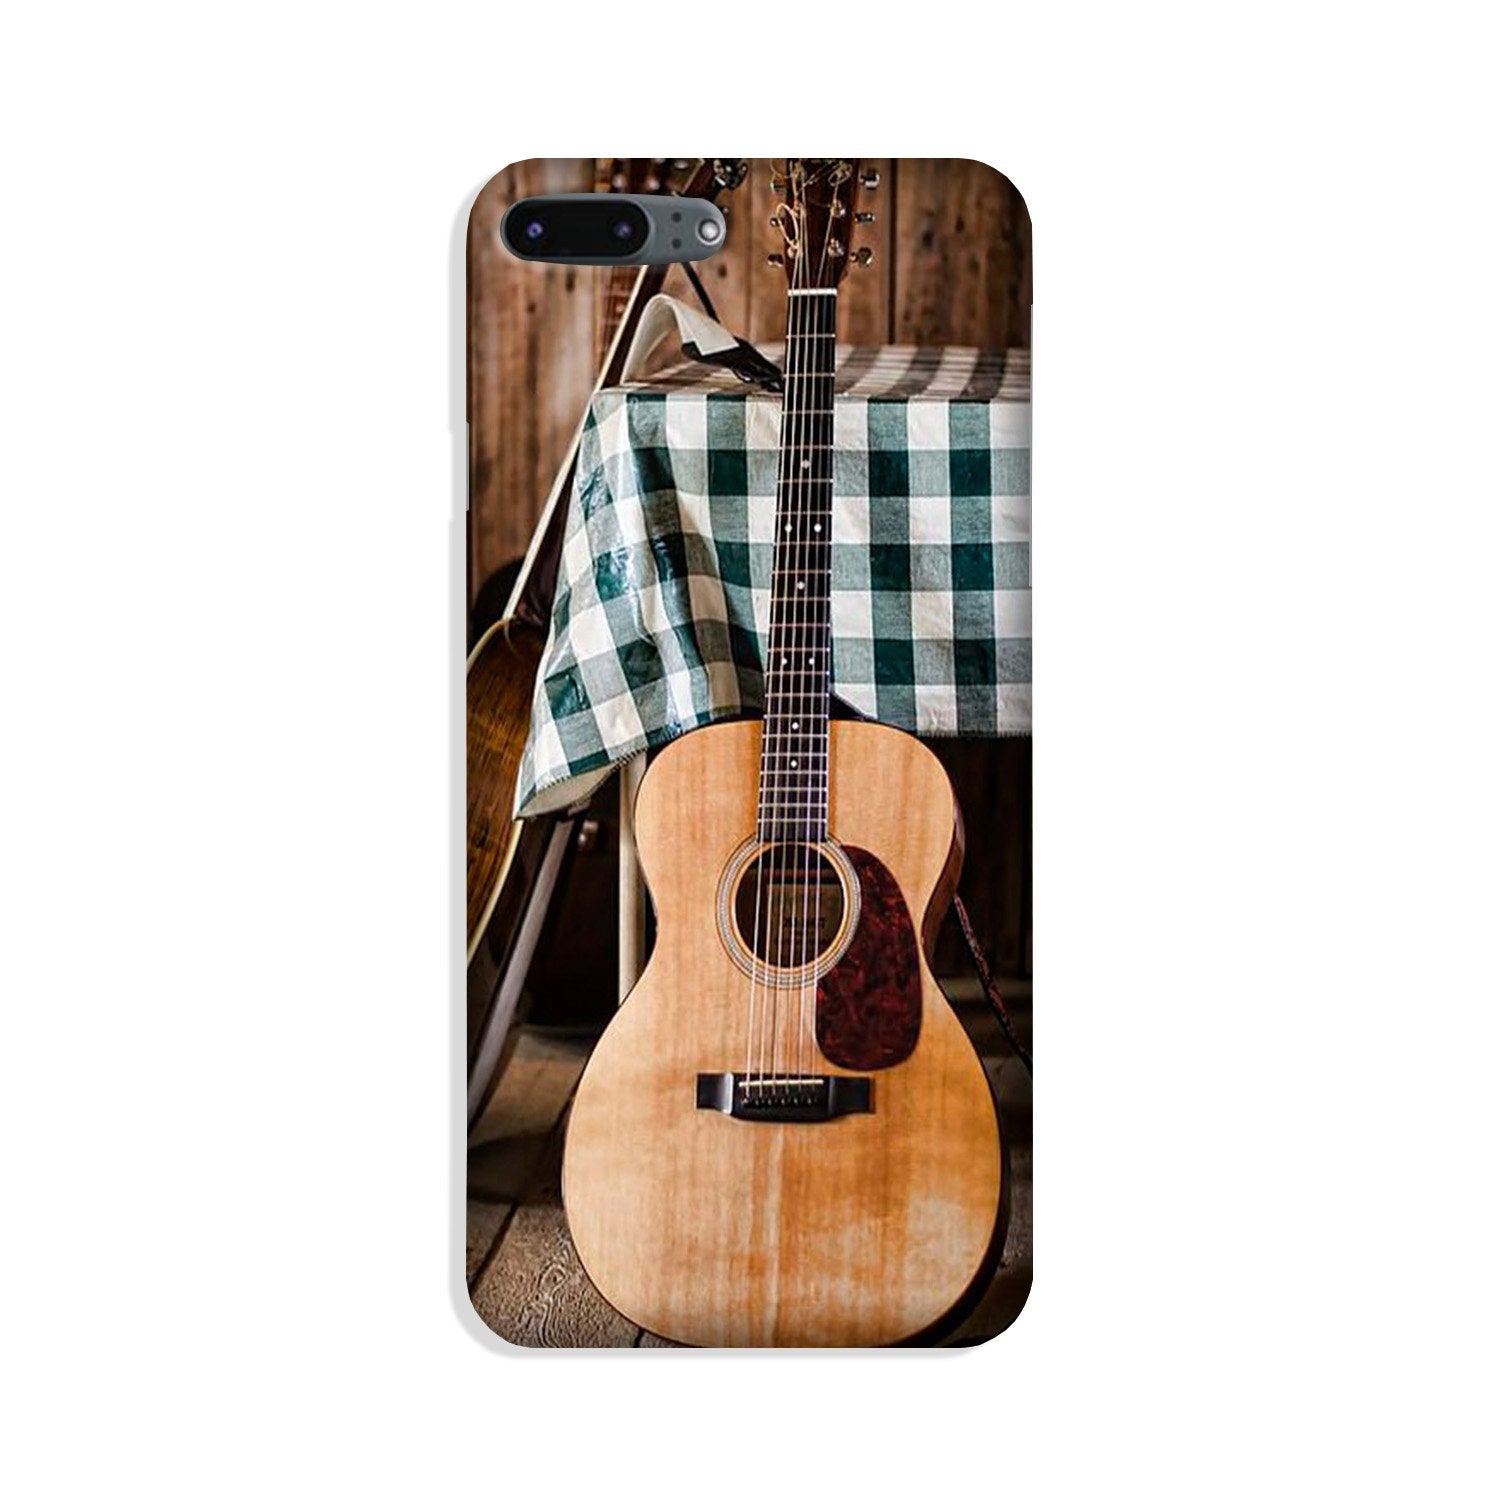 Guitar2 Case for iPhone 8 Plus